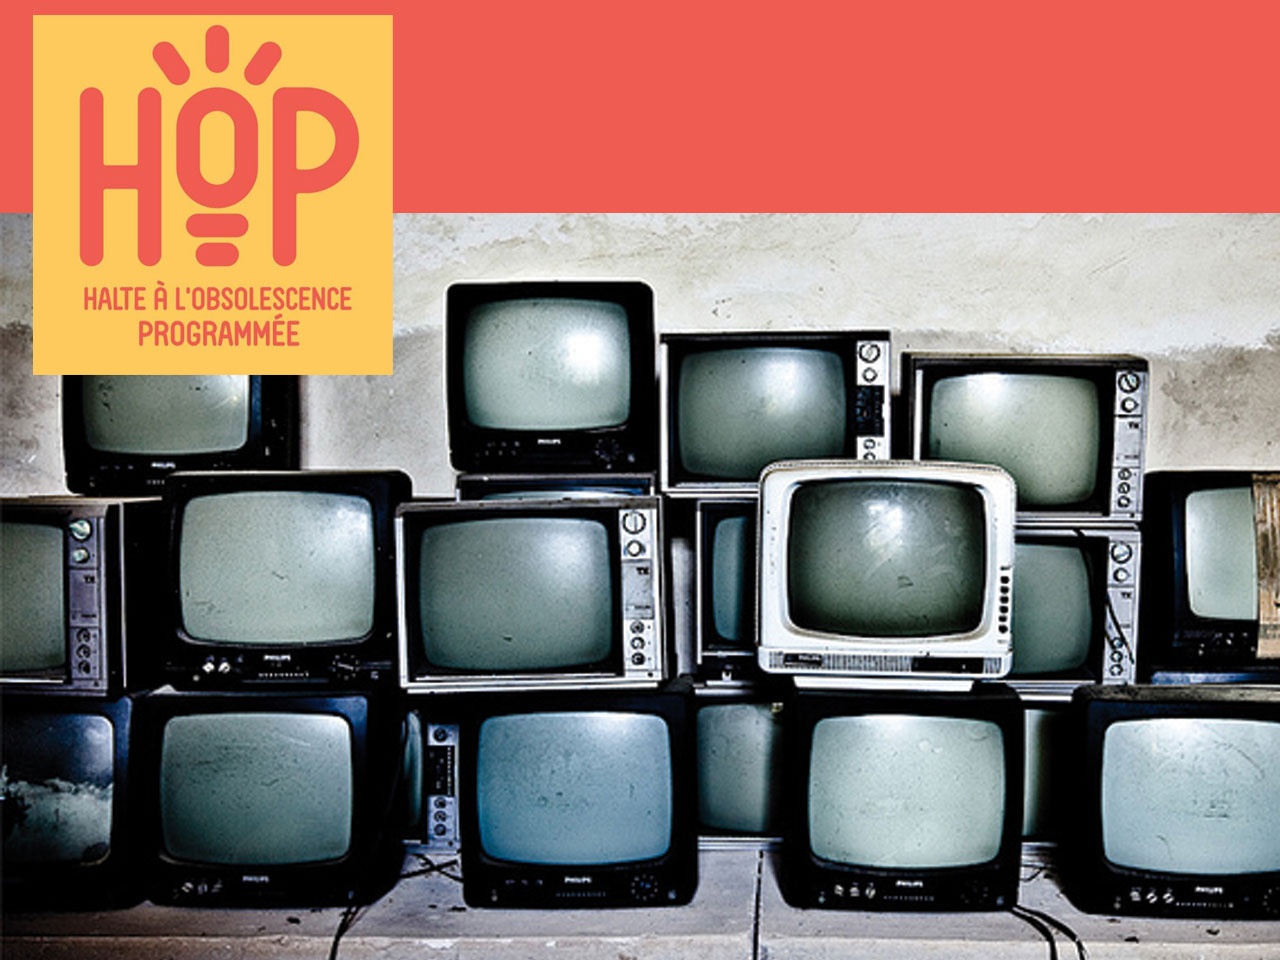 Enquête sur l’obsolescence des TV, HOP lance un appel aux fabricants 